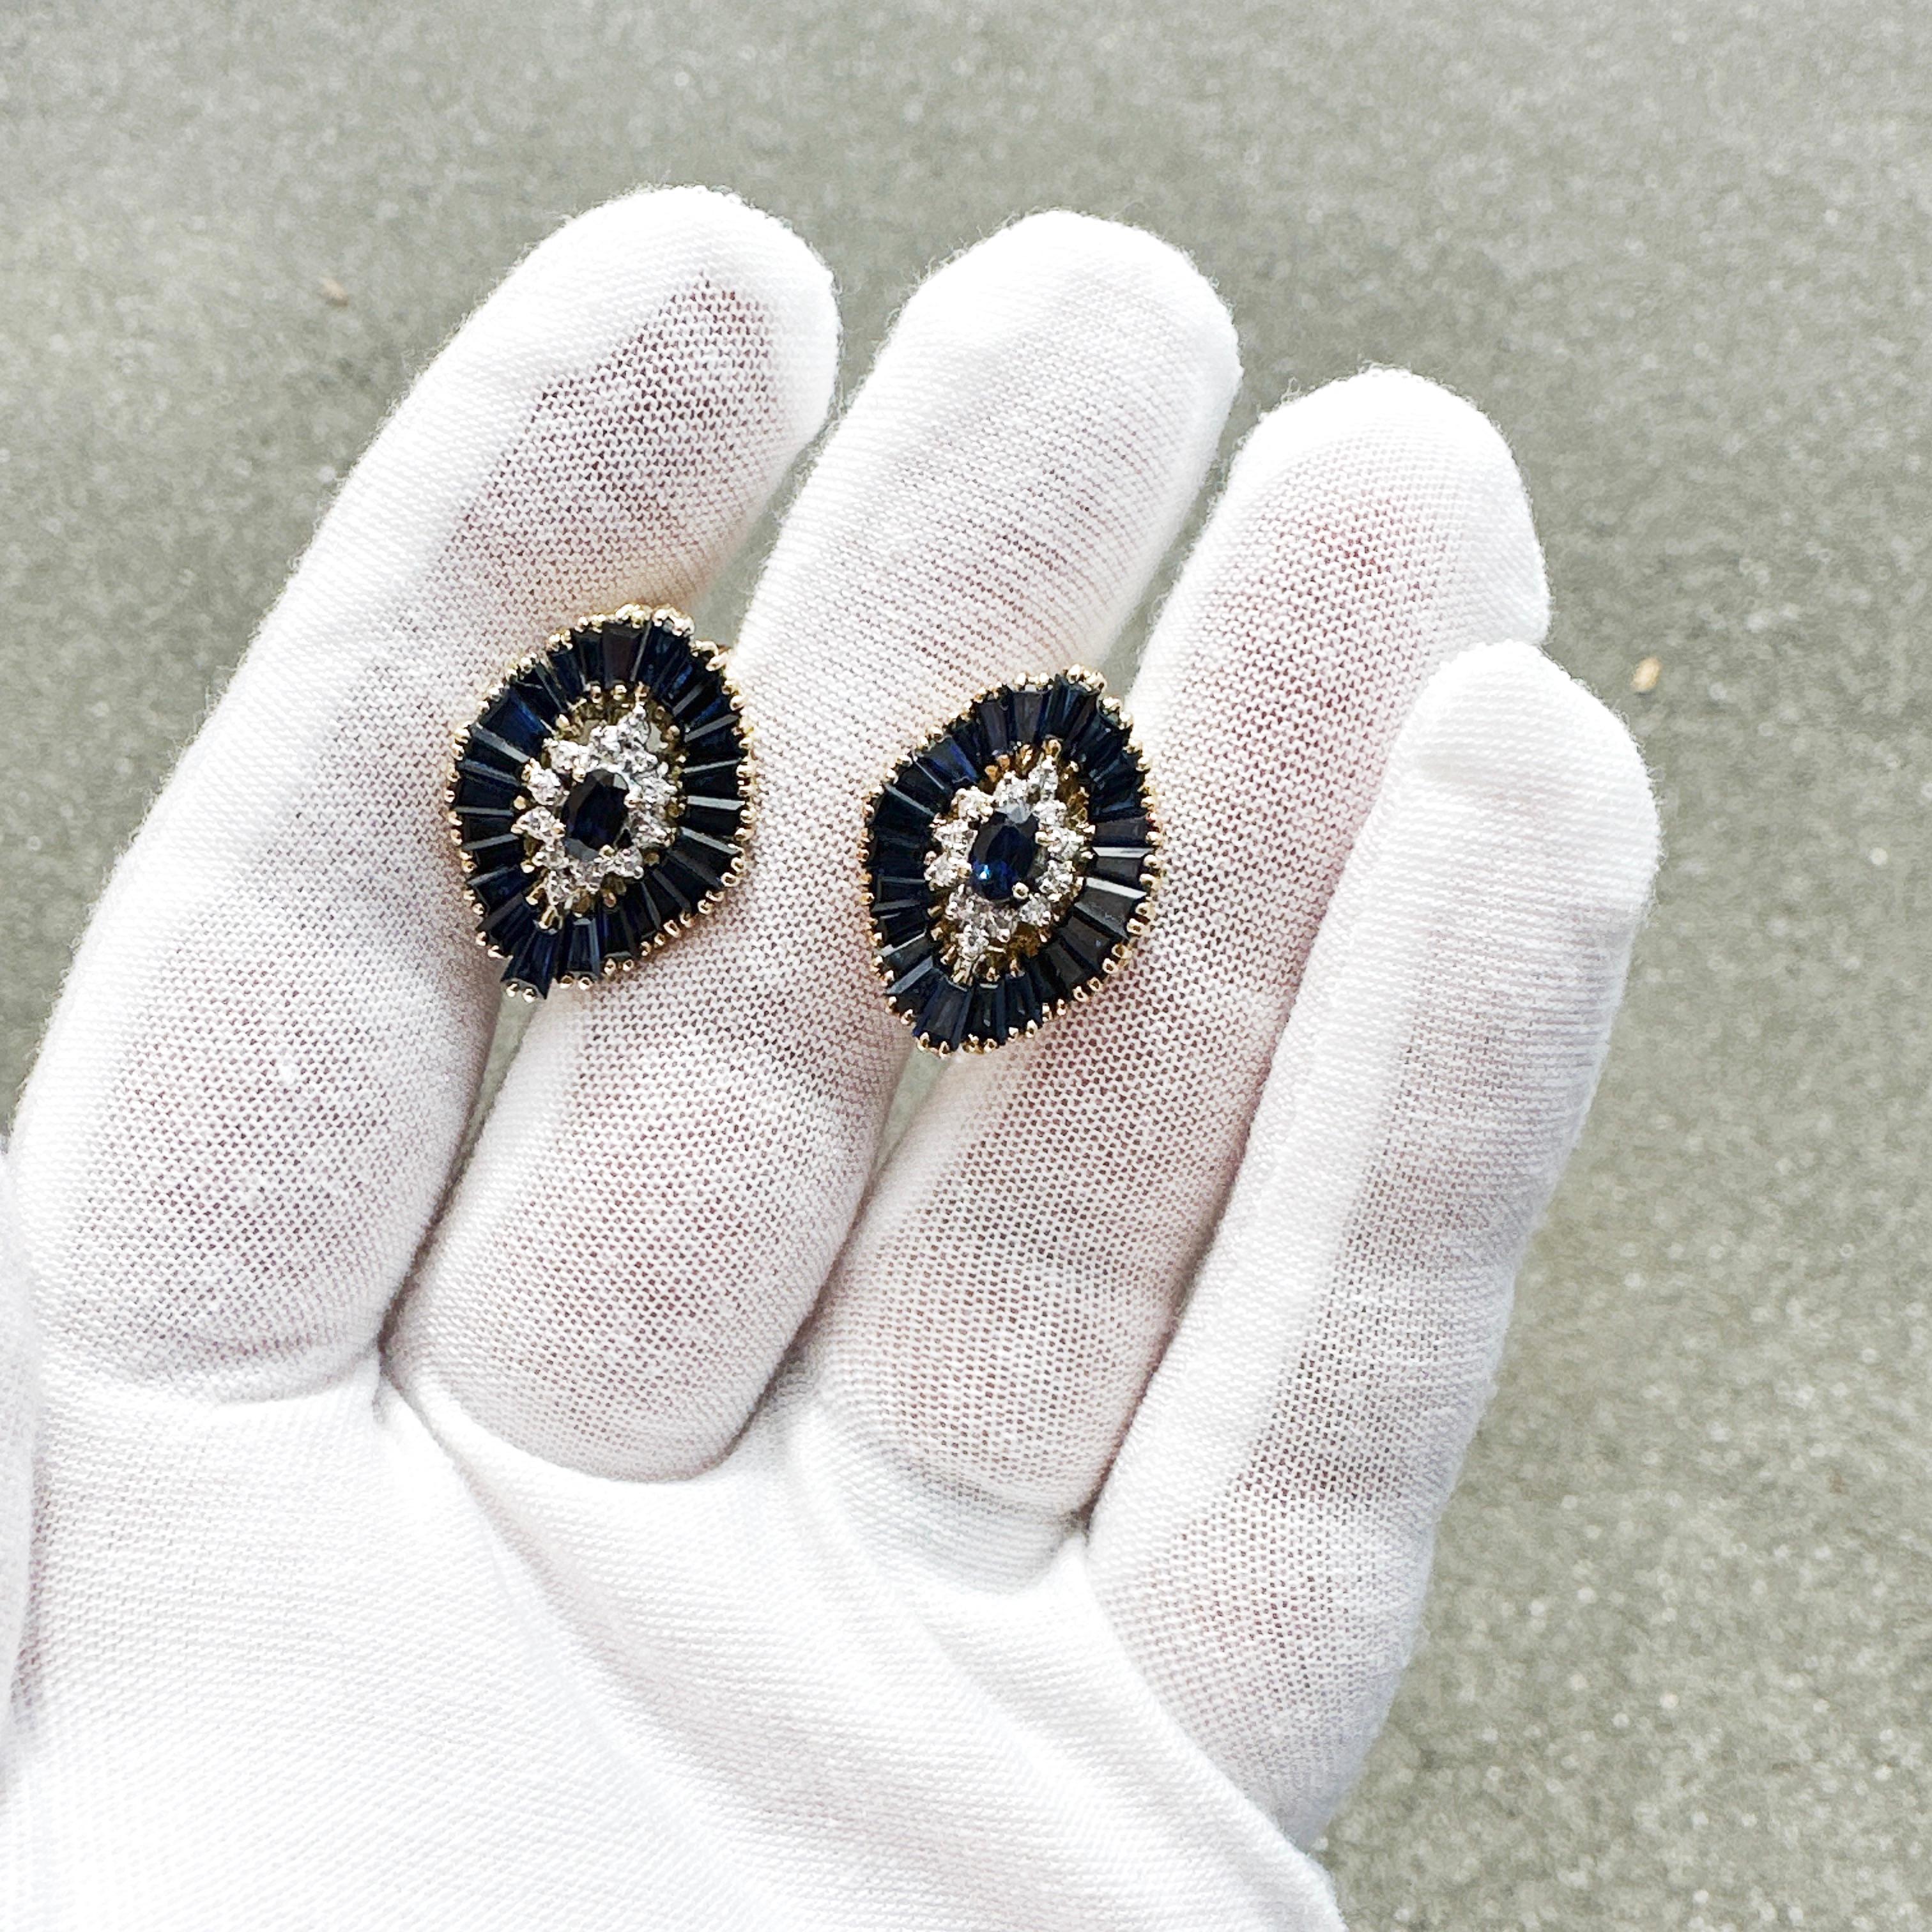 Hier ist ein schönes Paar 18k Gelbgold Blauer Saphir und Diamant Cluster Ohrringe.

Diese Ohrringe haben jeweils einen 0,36ct oval geschliffenen Saphir mit einer Größe von ca. 5,20mm x 3,30mm x 2,50mm. Saphir ist mäßig enthalten mit dunklem Ton,